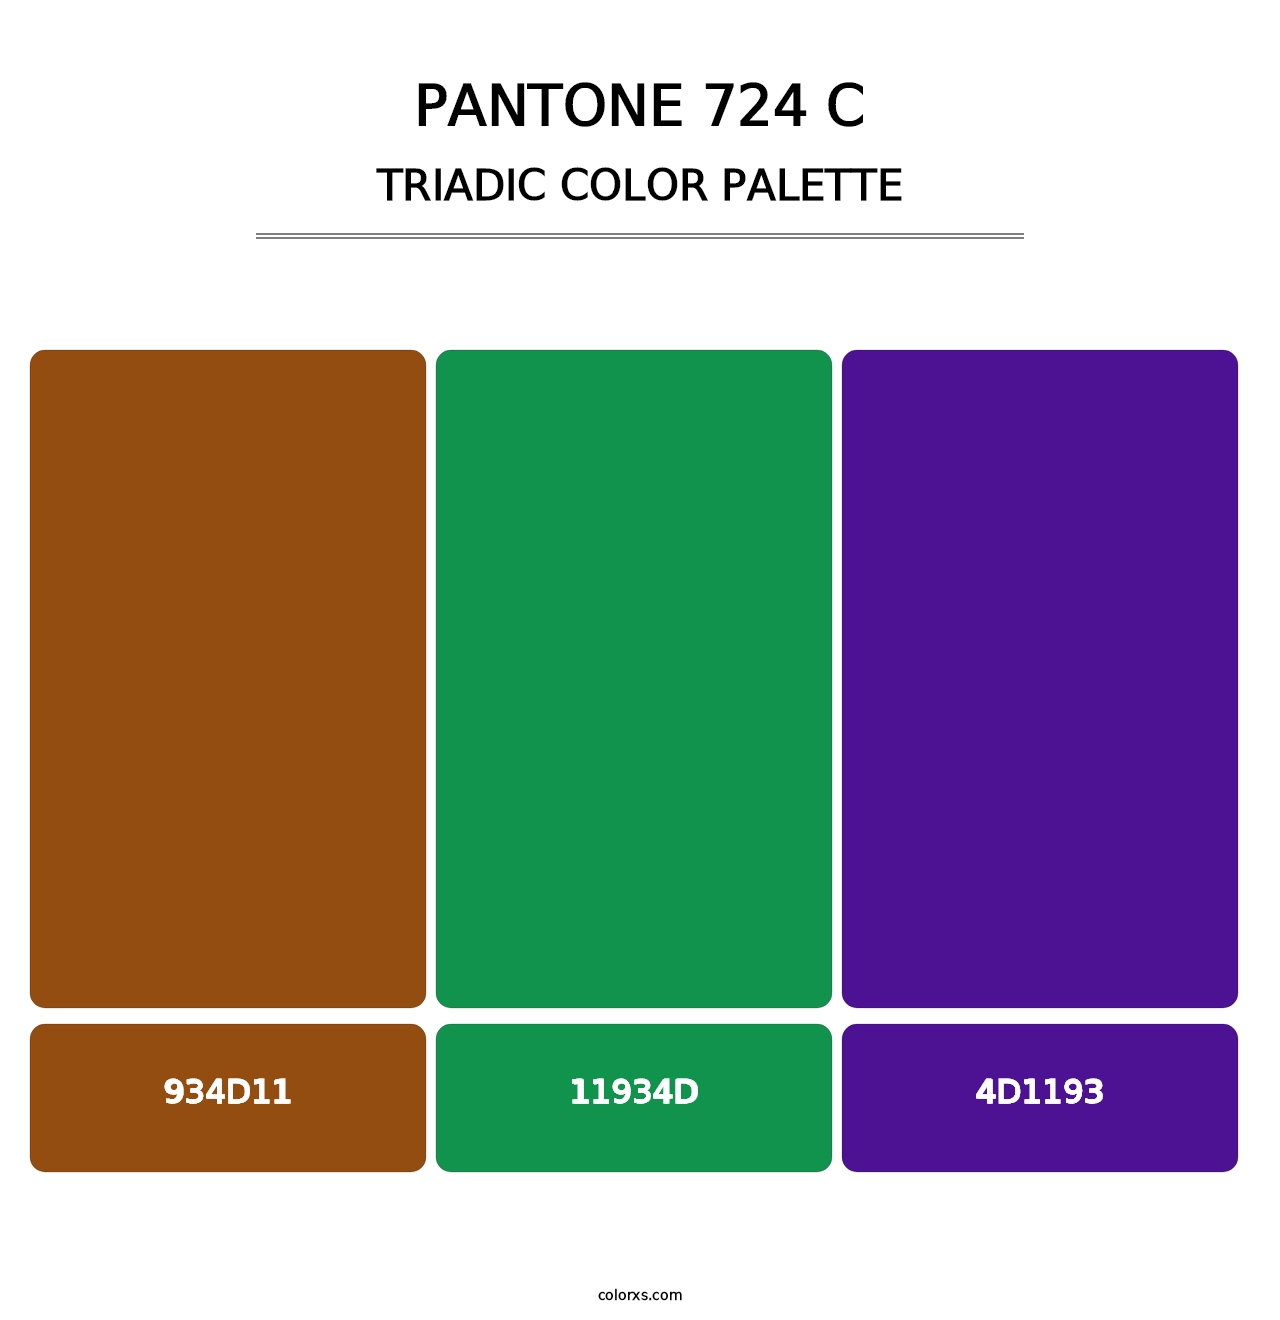 PANTONE 724 C - Triadic Color Palette